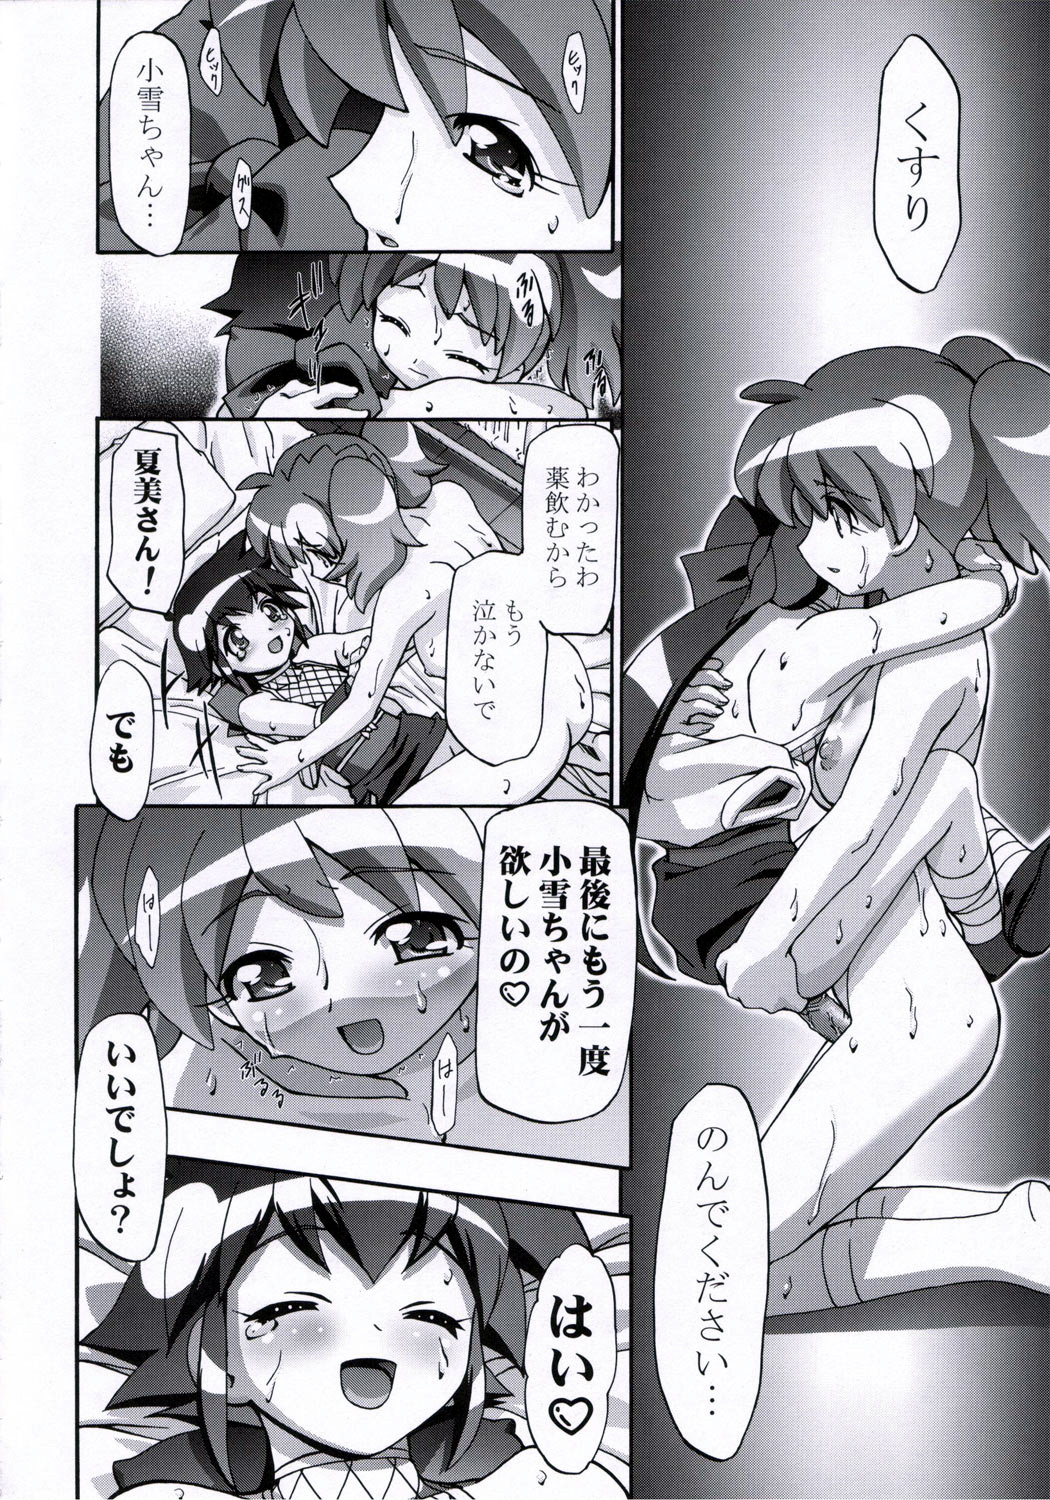 (SC31) [Gambler Club (Kousaka Jun)] Natsu Yuki - Summer Snow (Keroro Gunsou) page 35 full